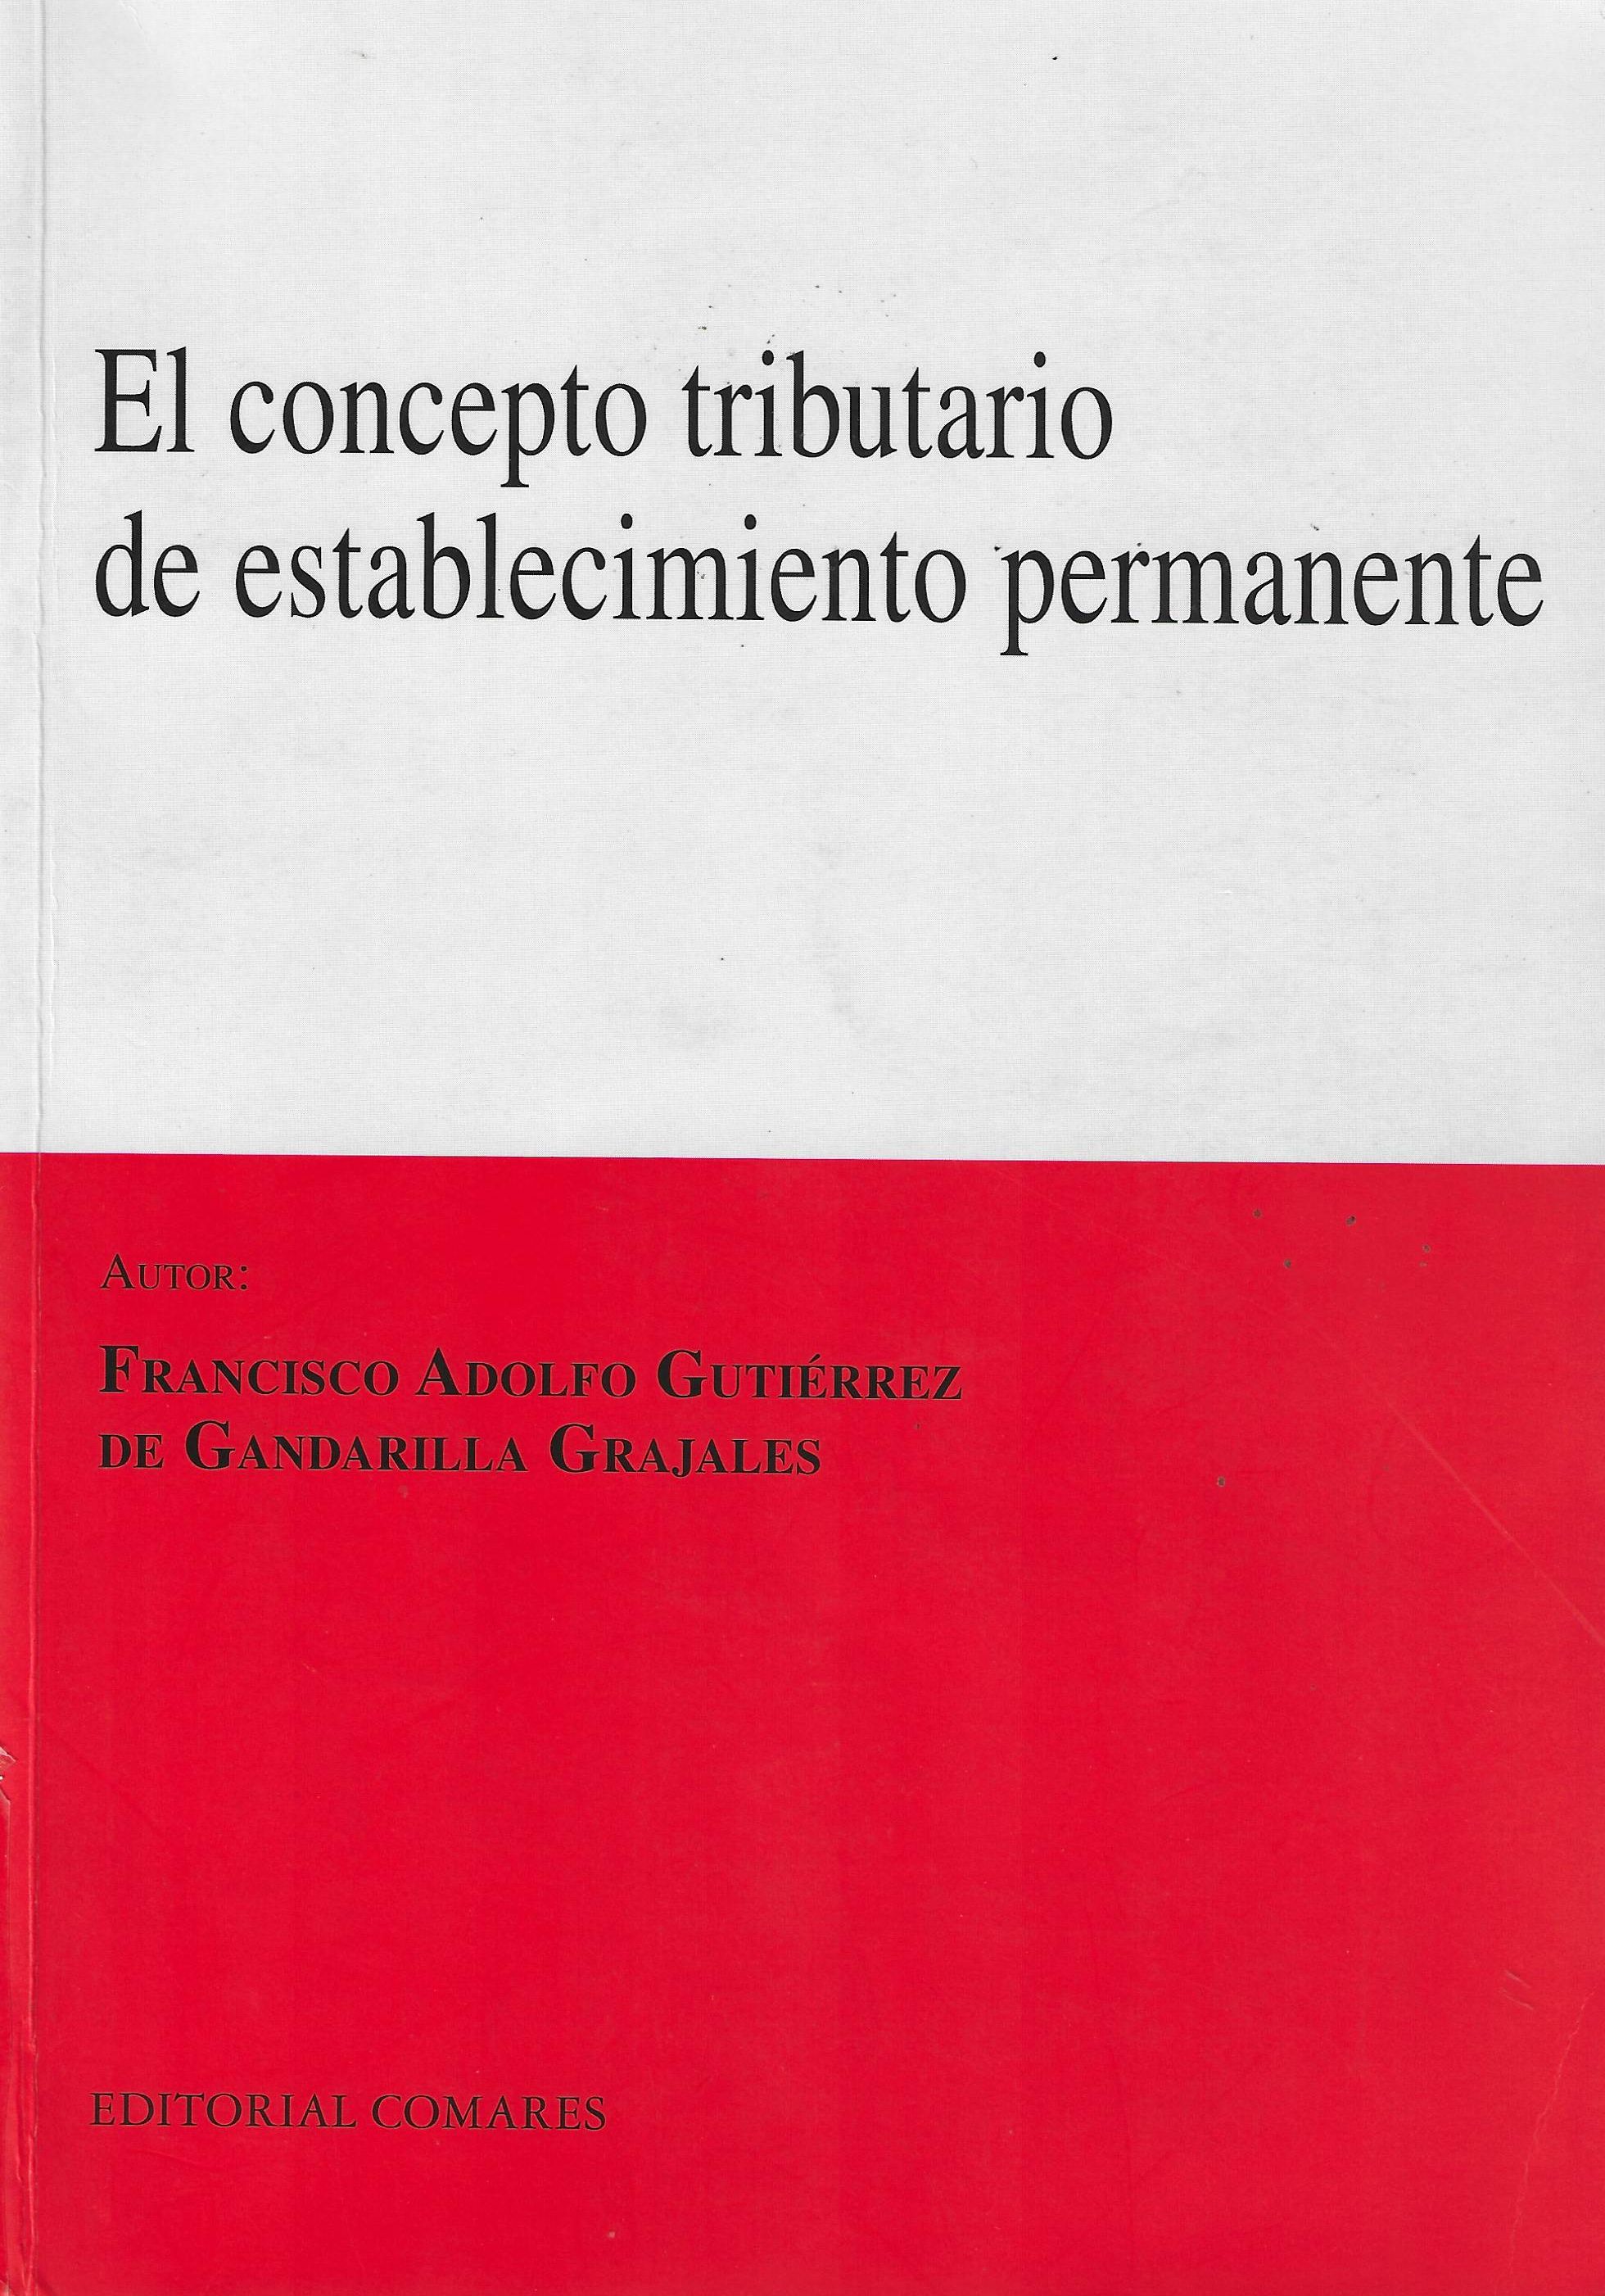 Imagen de portada del libro El concepto tributario de establecimiento permanente